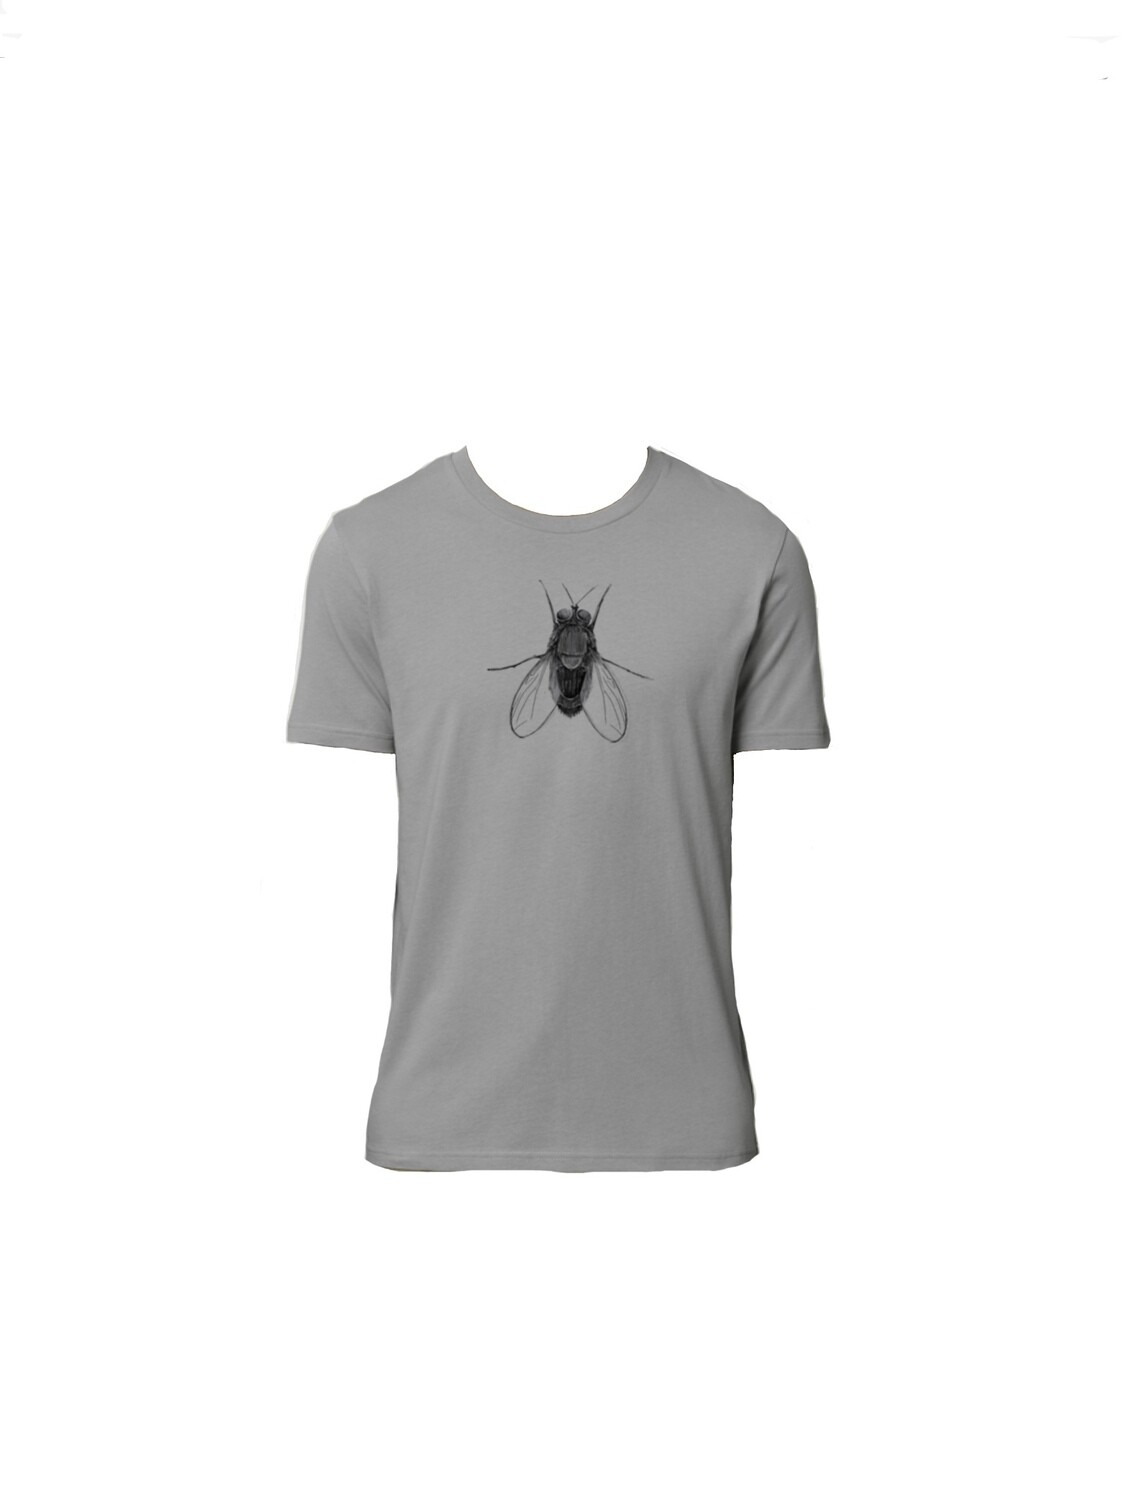 Basic Unisex “Fly” T-shirt